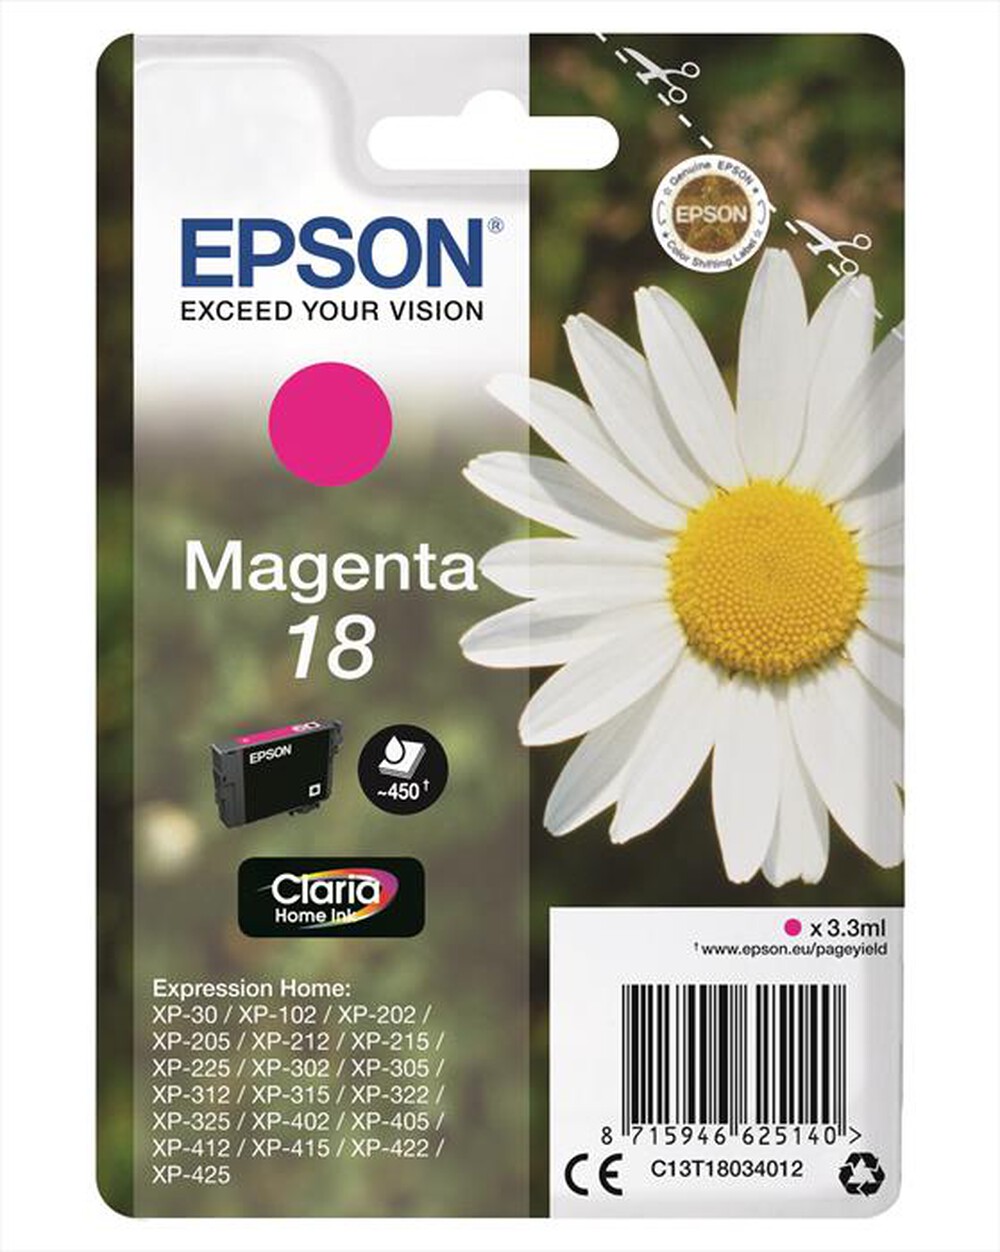 "EPSON - C13T18034022 - Magenta"